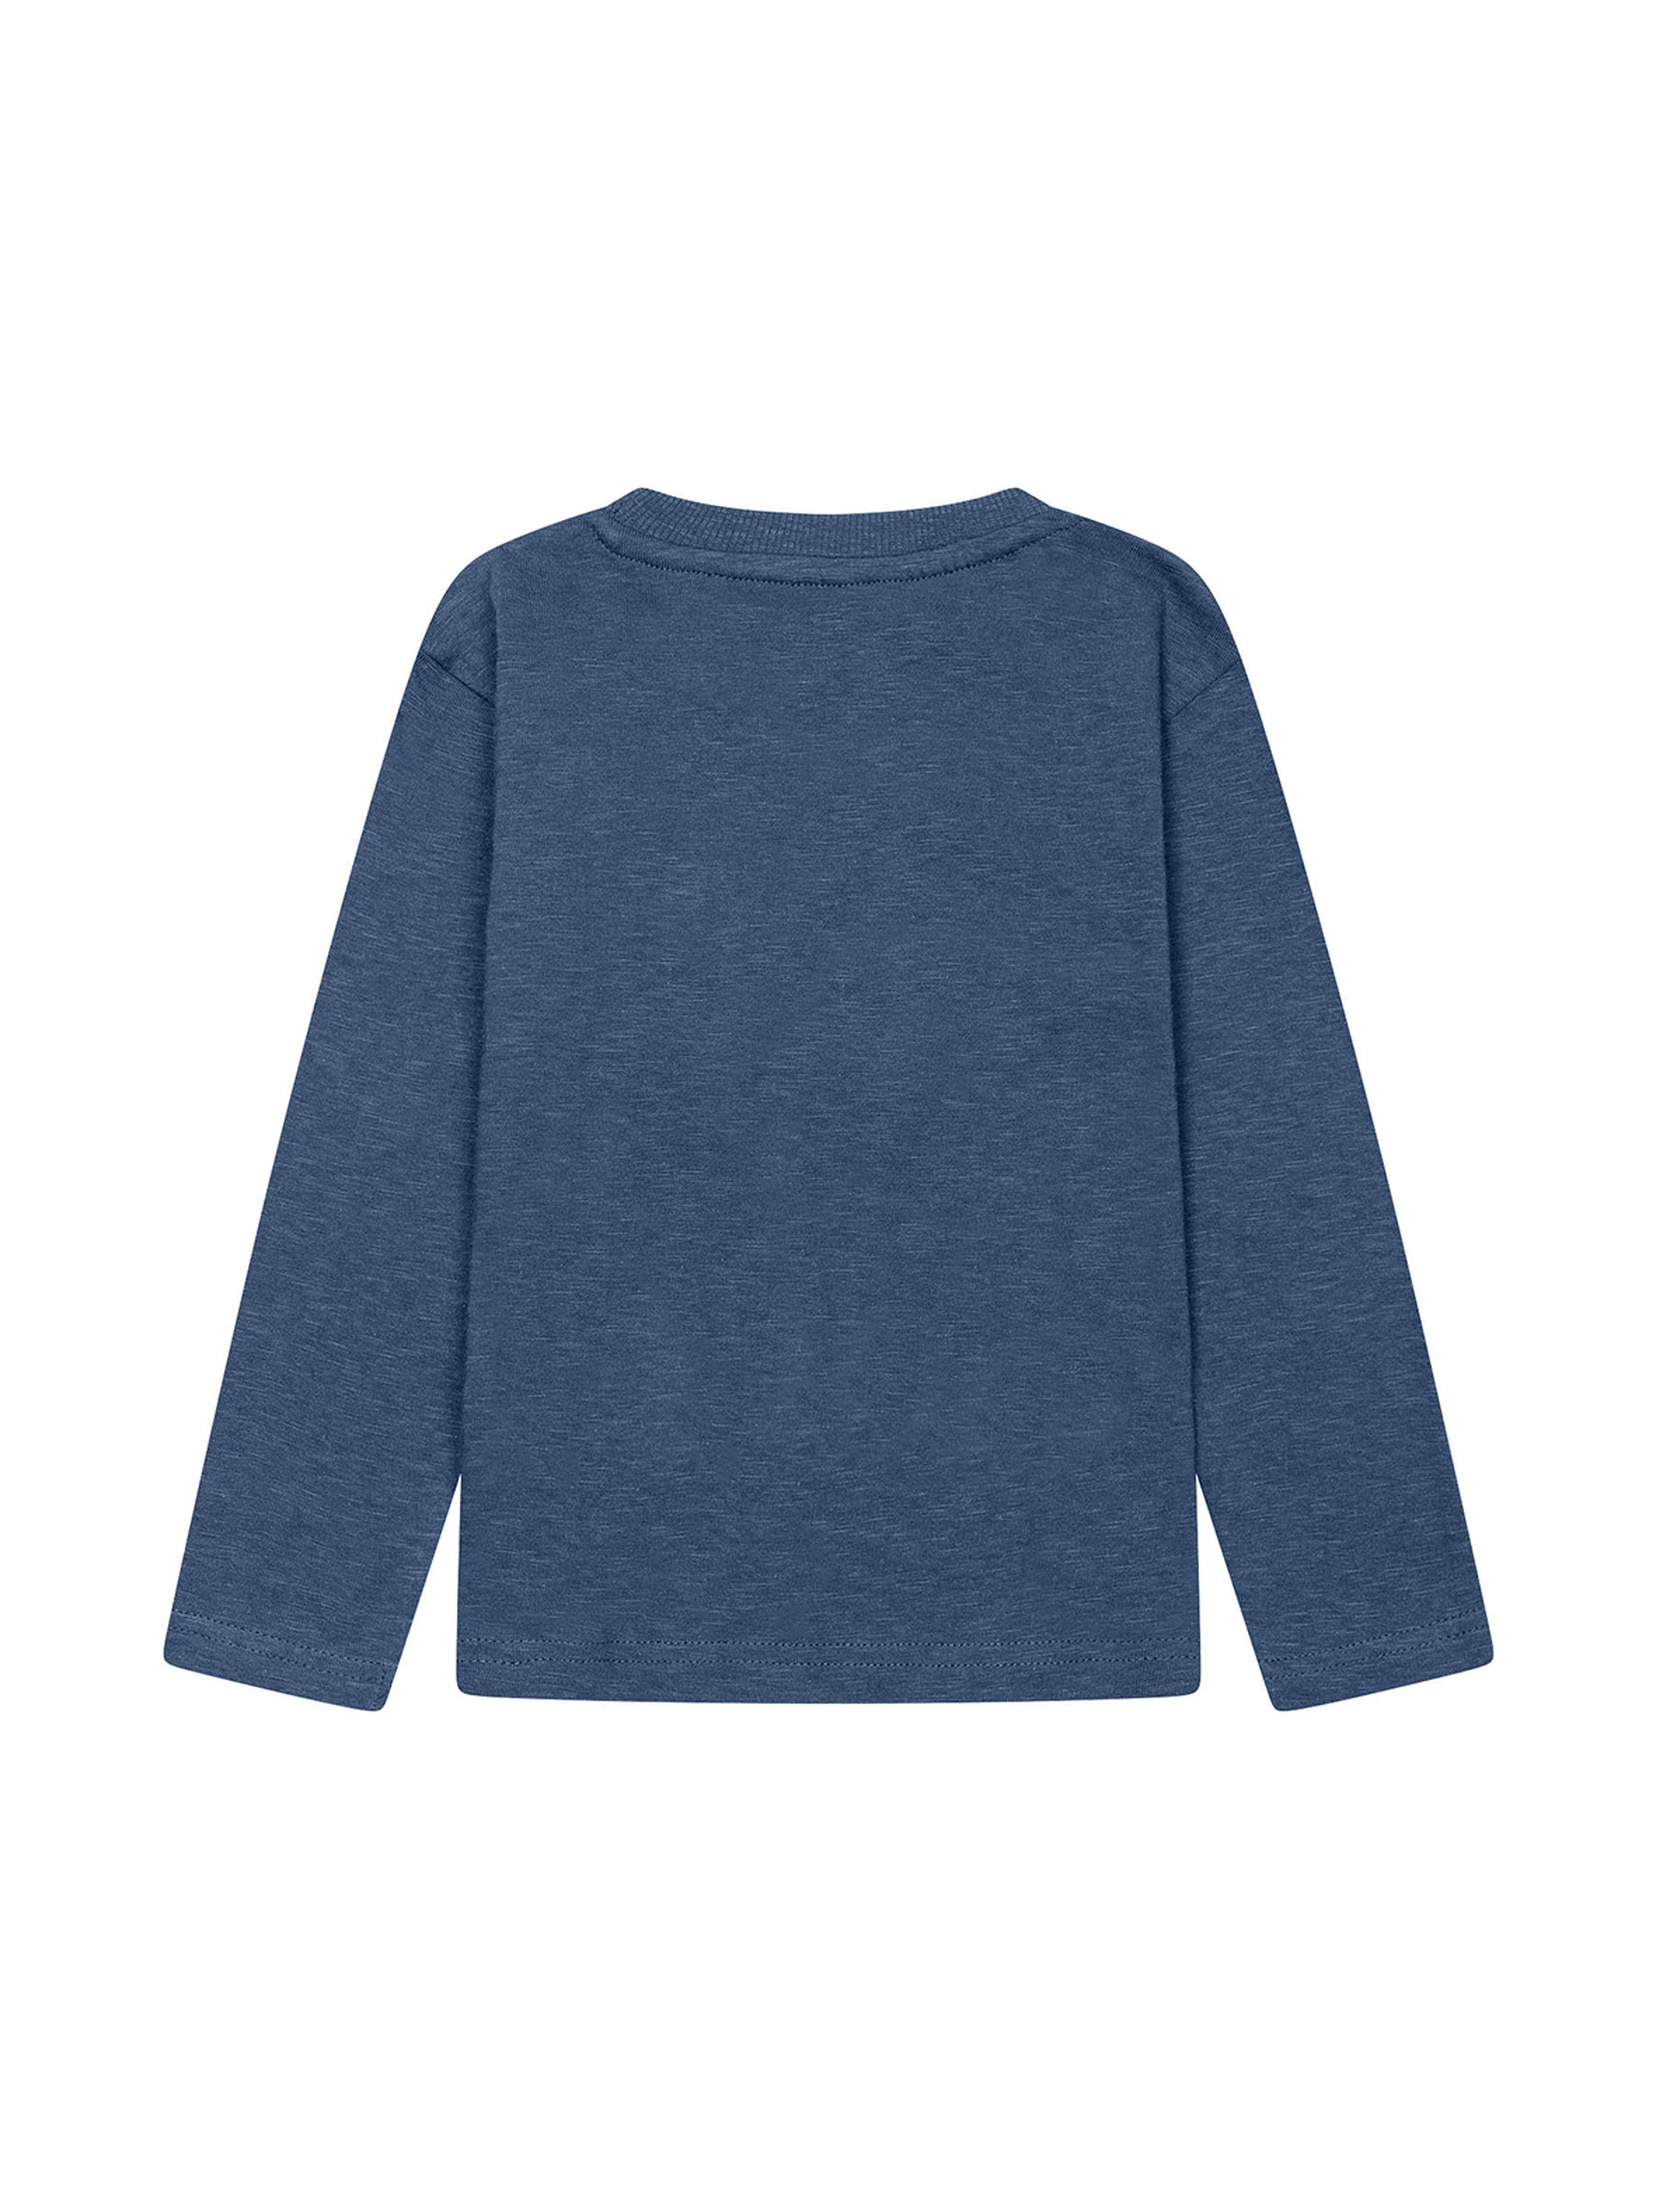 Niebieska bluzka chłopięca bawełniana z długim rękawem